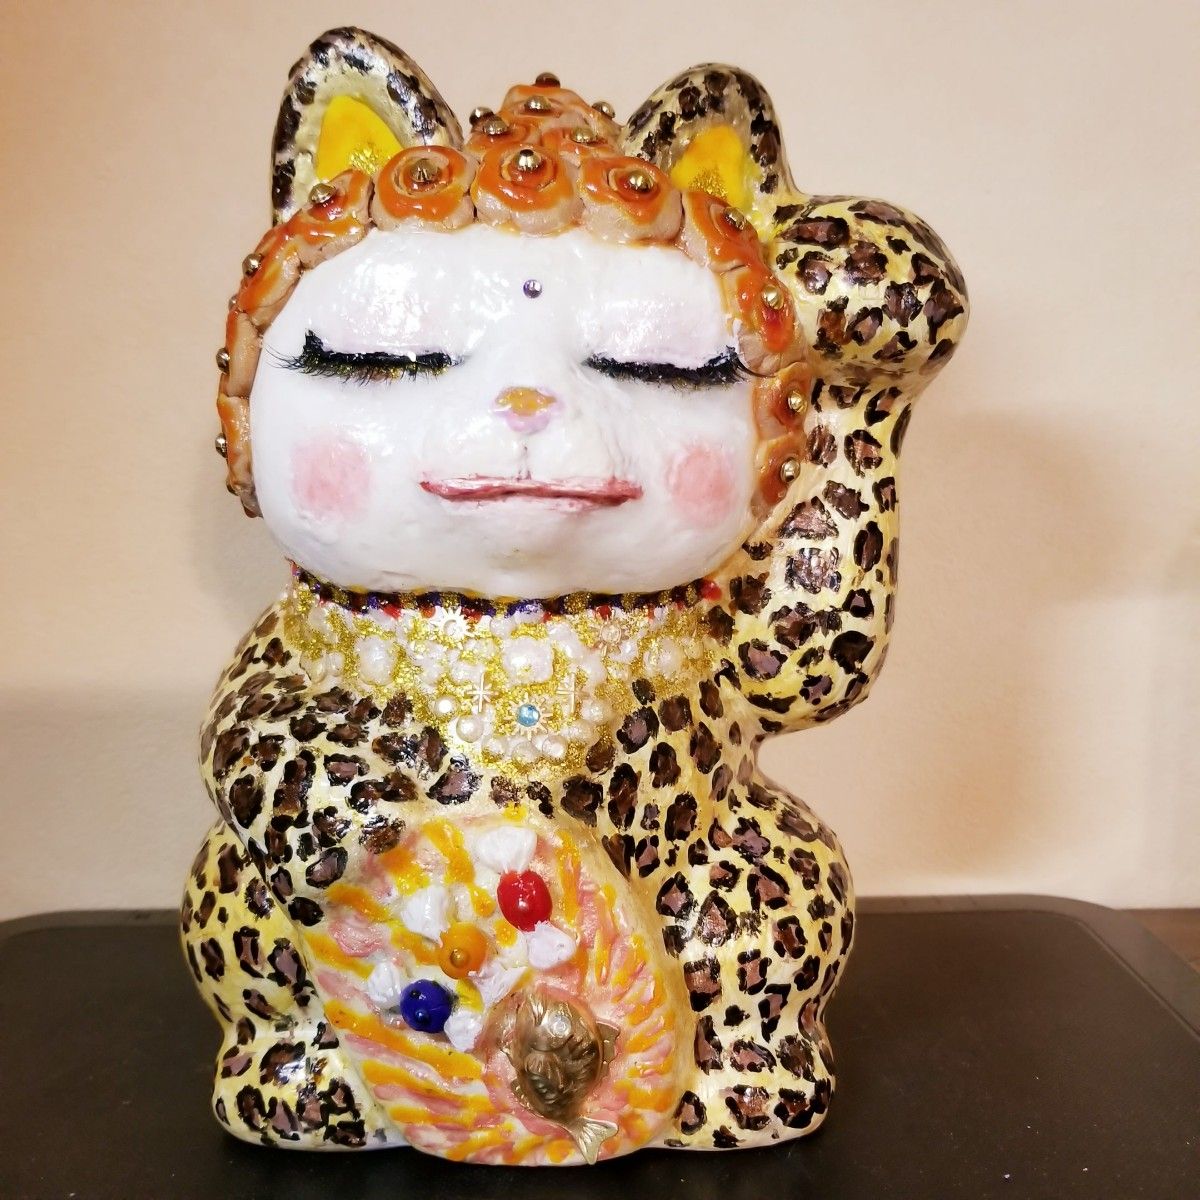 招き猫 陶器 豹柄 縁起物 新品 贈答 ギフト まねき猫 ビッグサイズ オリジナル ハンドメイド ヒョウ柄